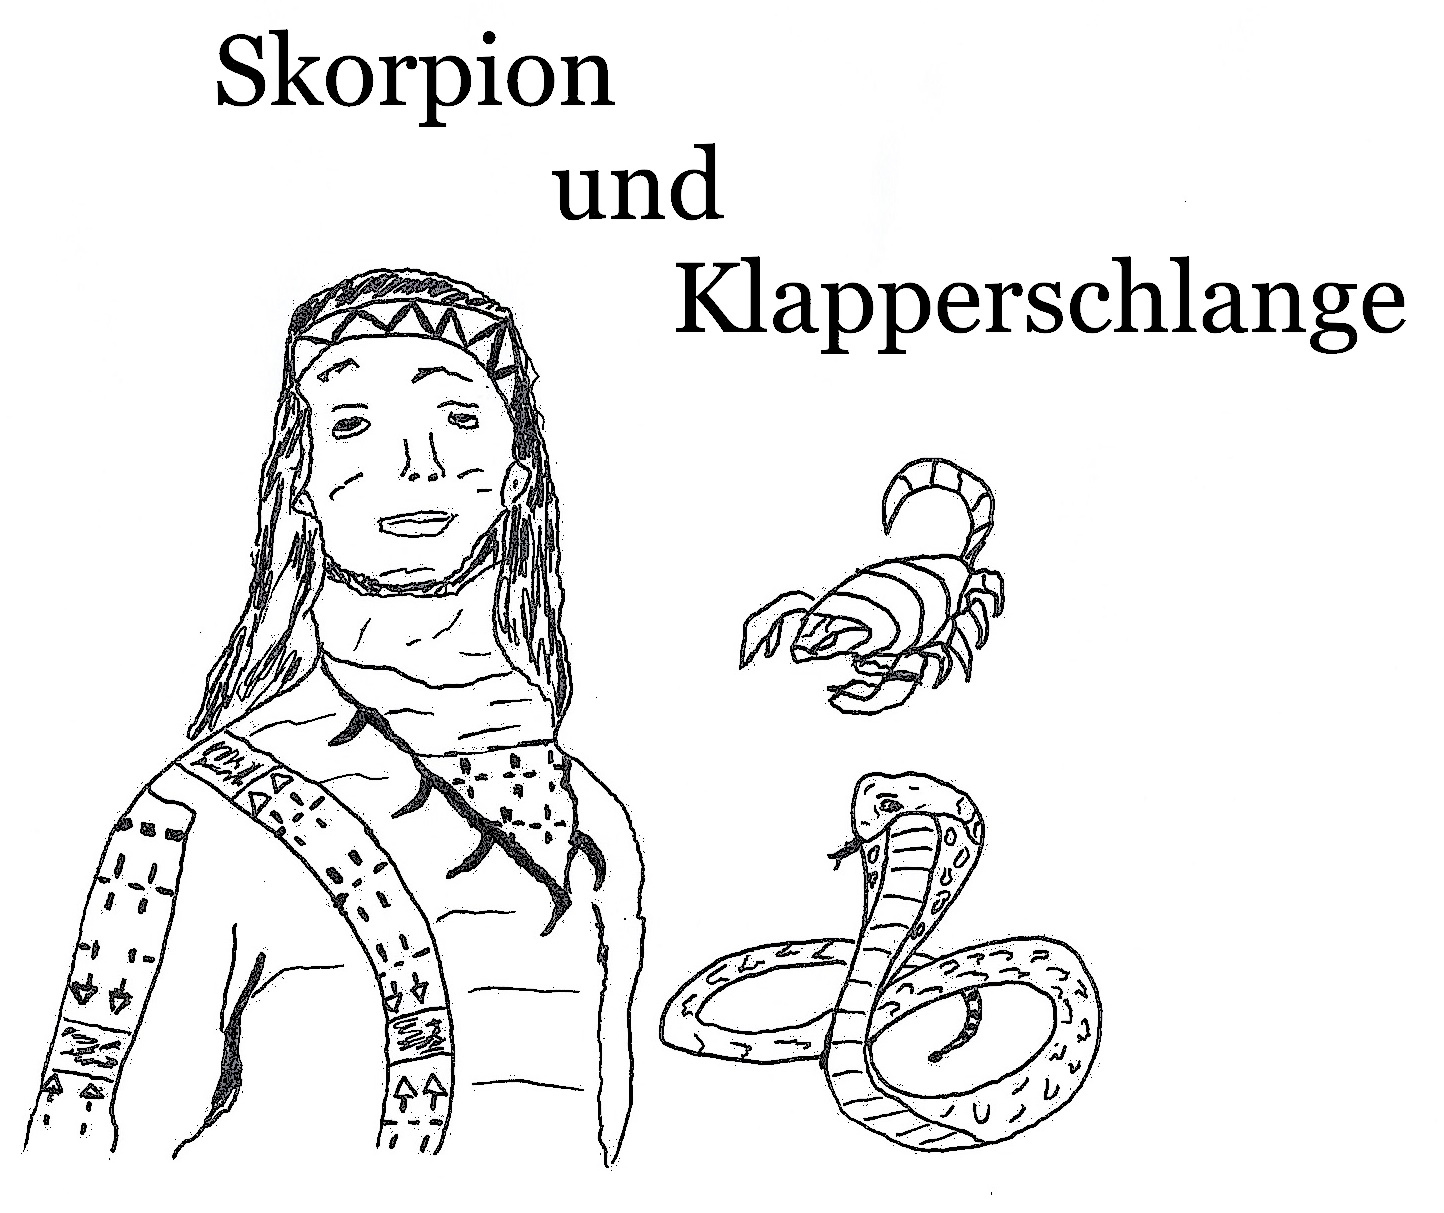 Marheinecke, Reinhard: Skorpion und Klapperschlange  –  Rezension